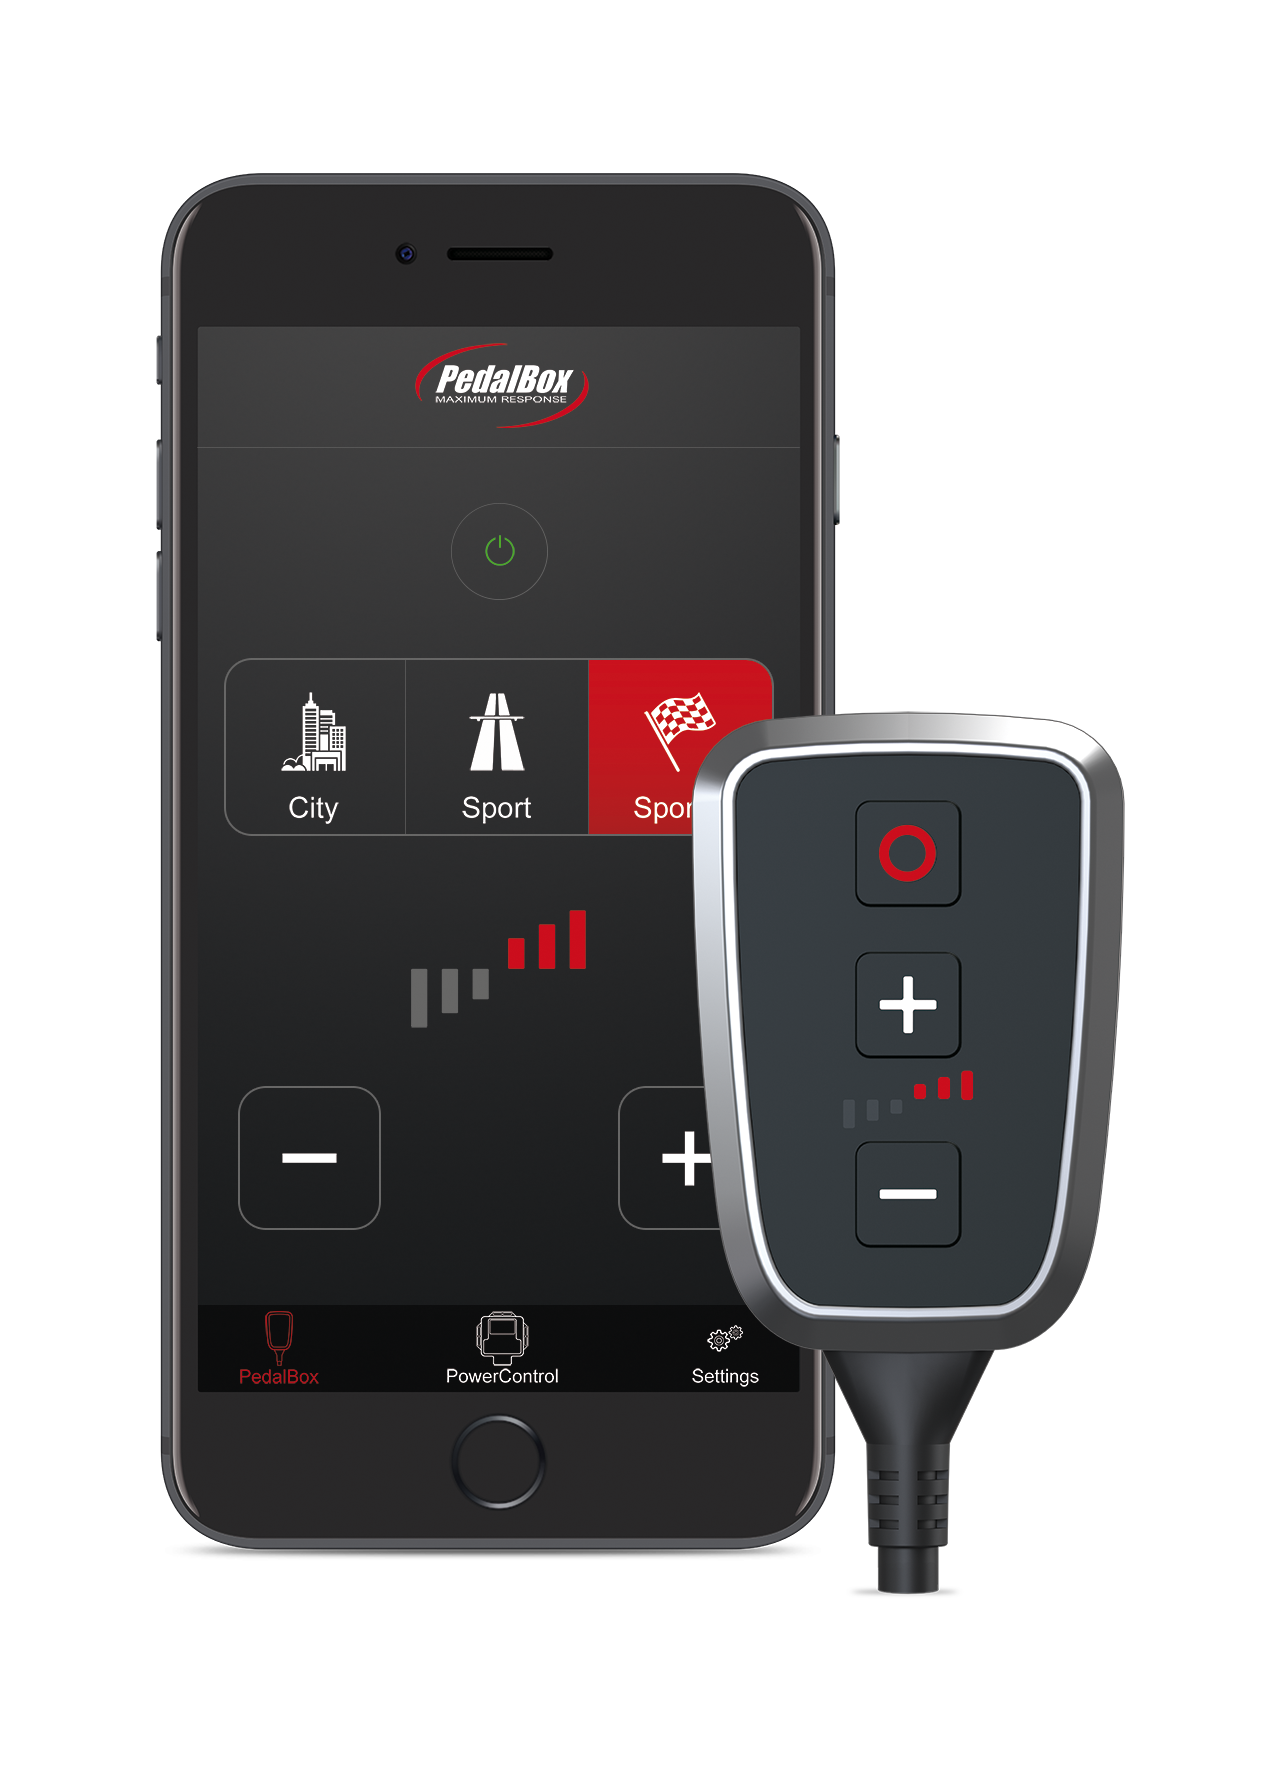 Die neue Pedalbox+ mit Smartphone App Steuerung